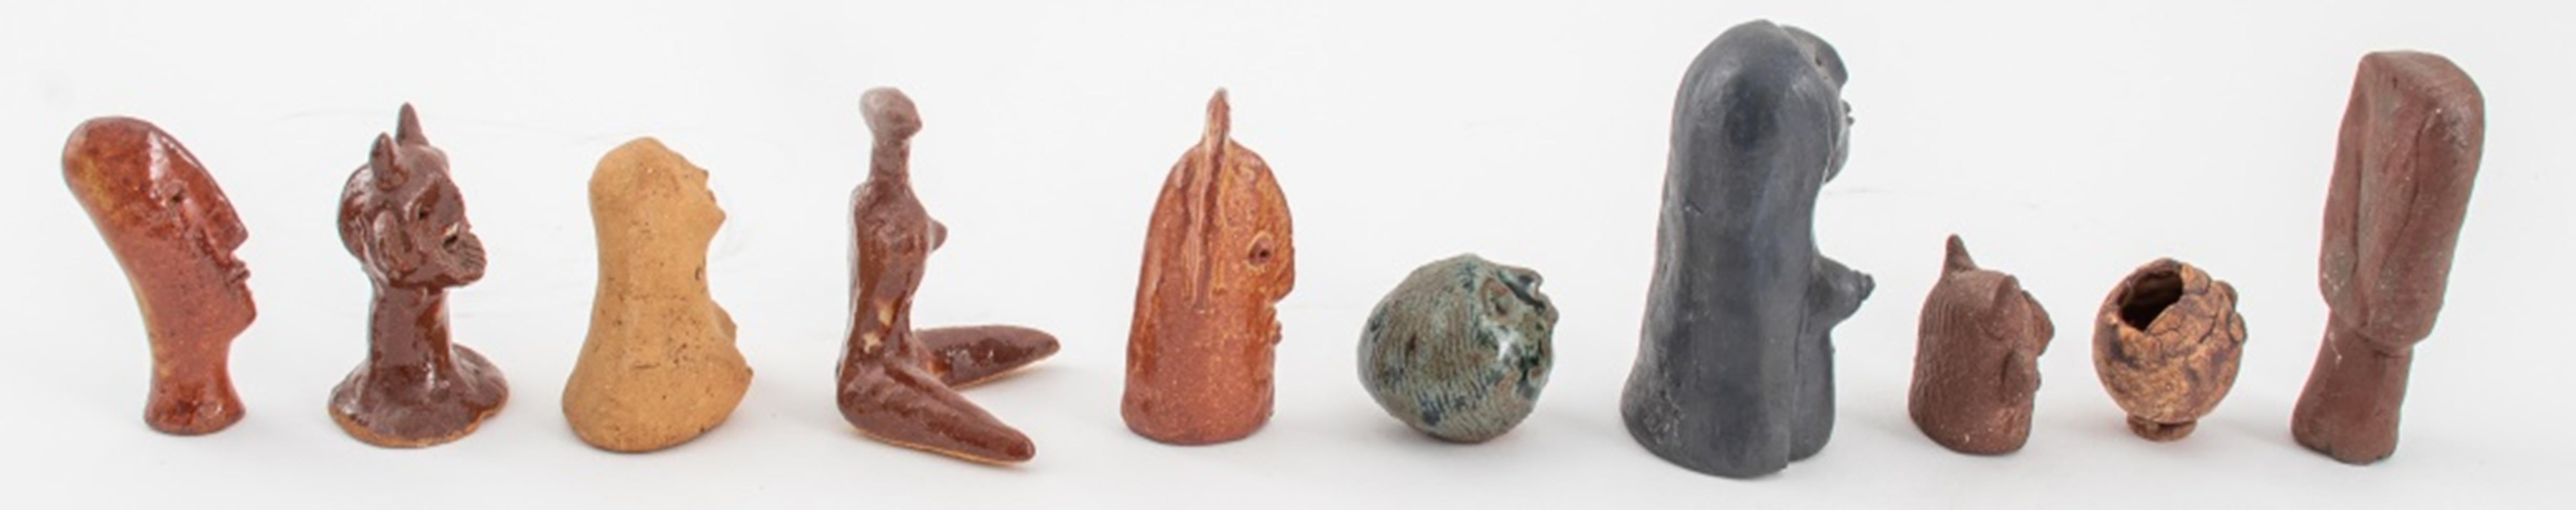 Gruppe von zehn kleinen Keramikskulpturen von Louis Mendez (Amerikaner, 1929-2012), Studio Art Pottery, bestehend aus zwei gehörnten Büsten, zwei glasierten abstrakten Keramikköpfen, einer unglasierten abstrakten geometrischen Büste, einem